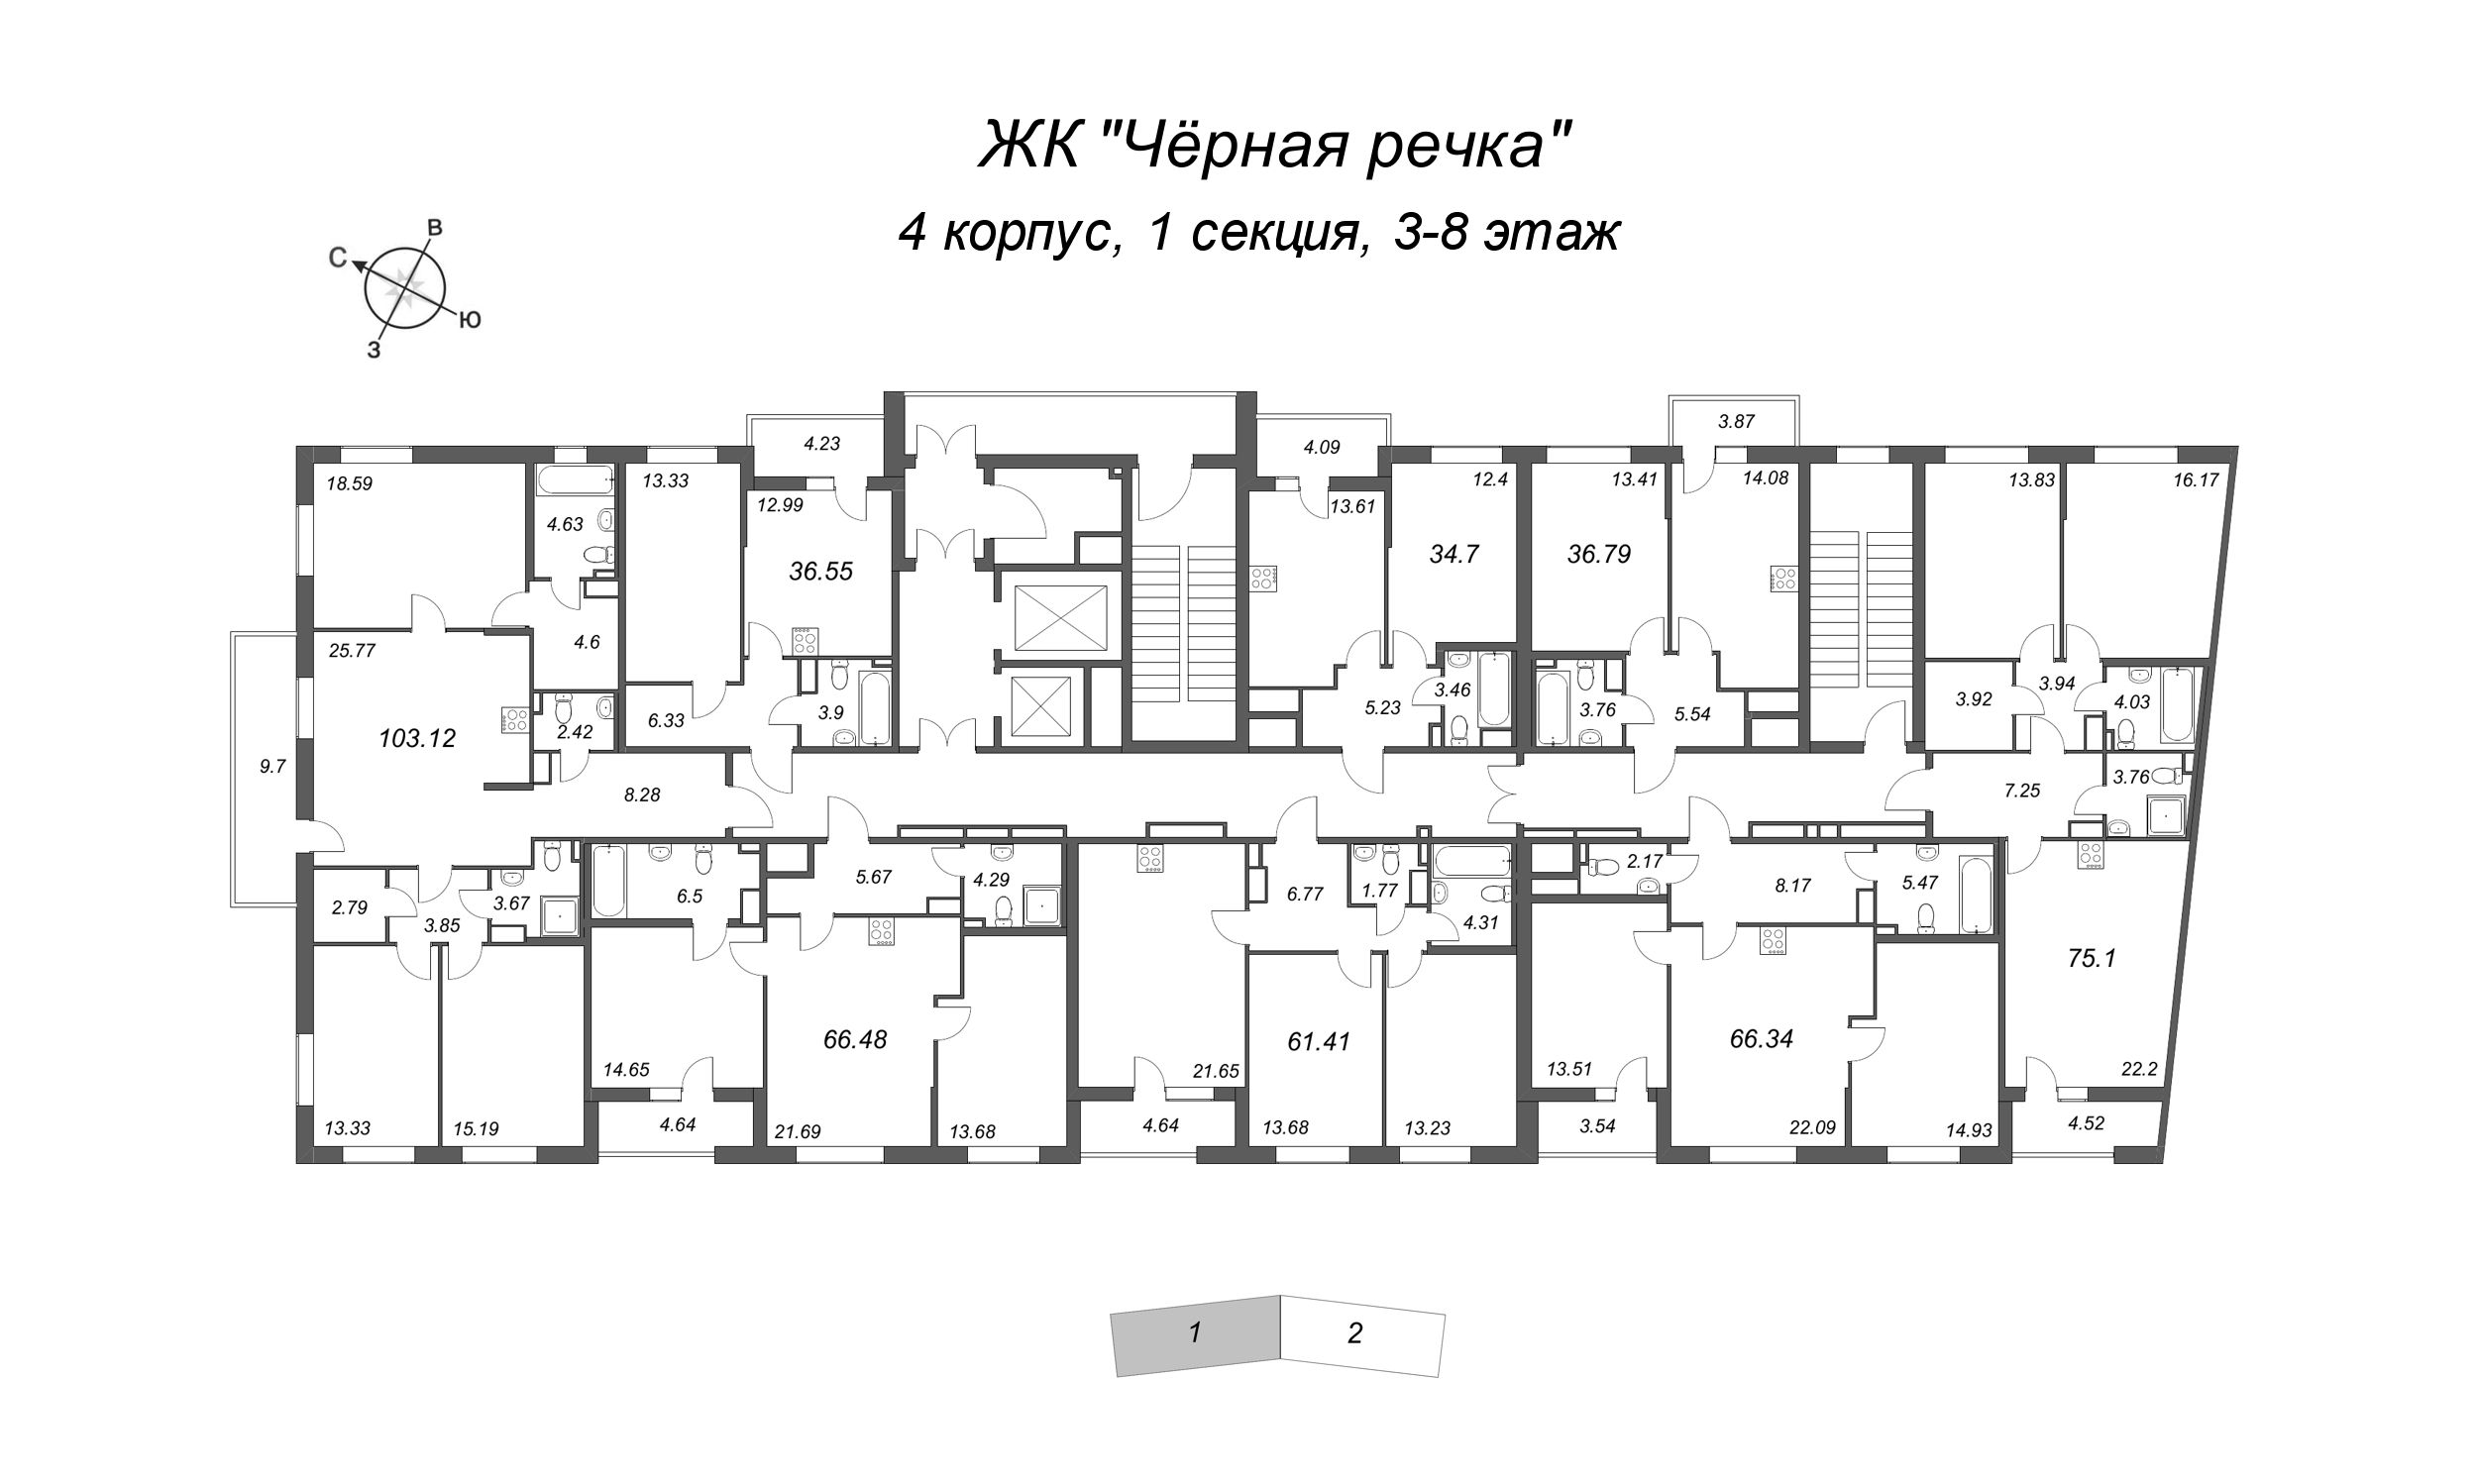 4-комнатная (Евро) квартира, 103.12 м² в ЖК "Чёрная речка" - планировка этажа